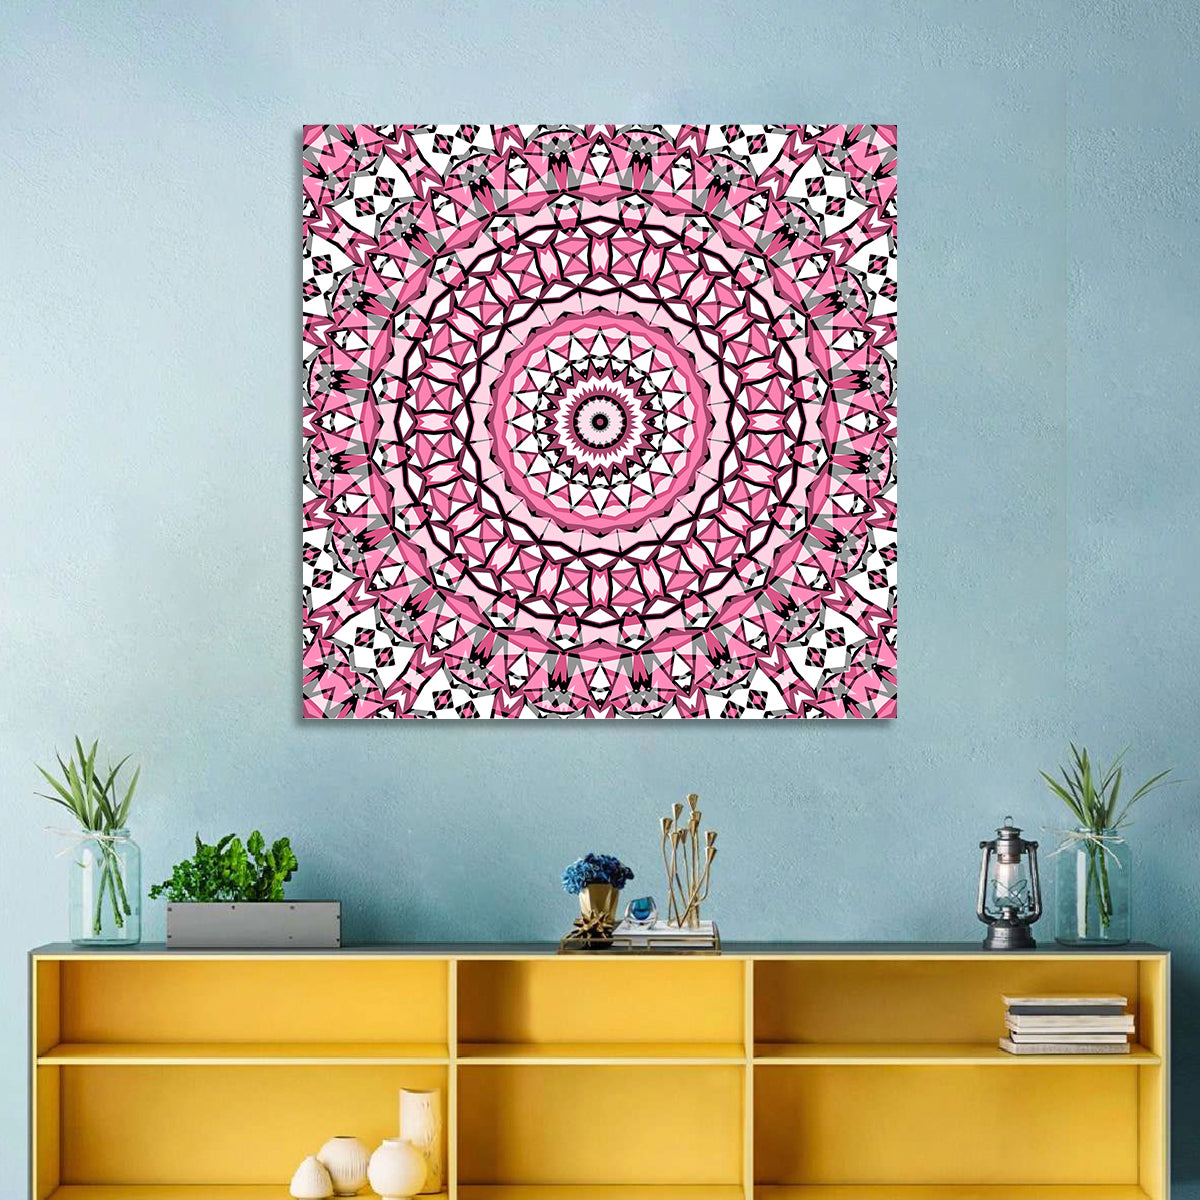 Mosaic Kaleidoscope Mandala Wall Art